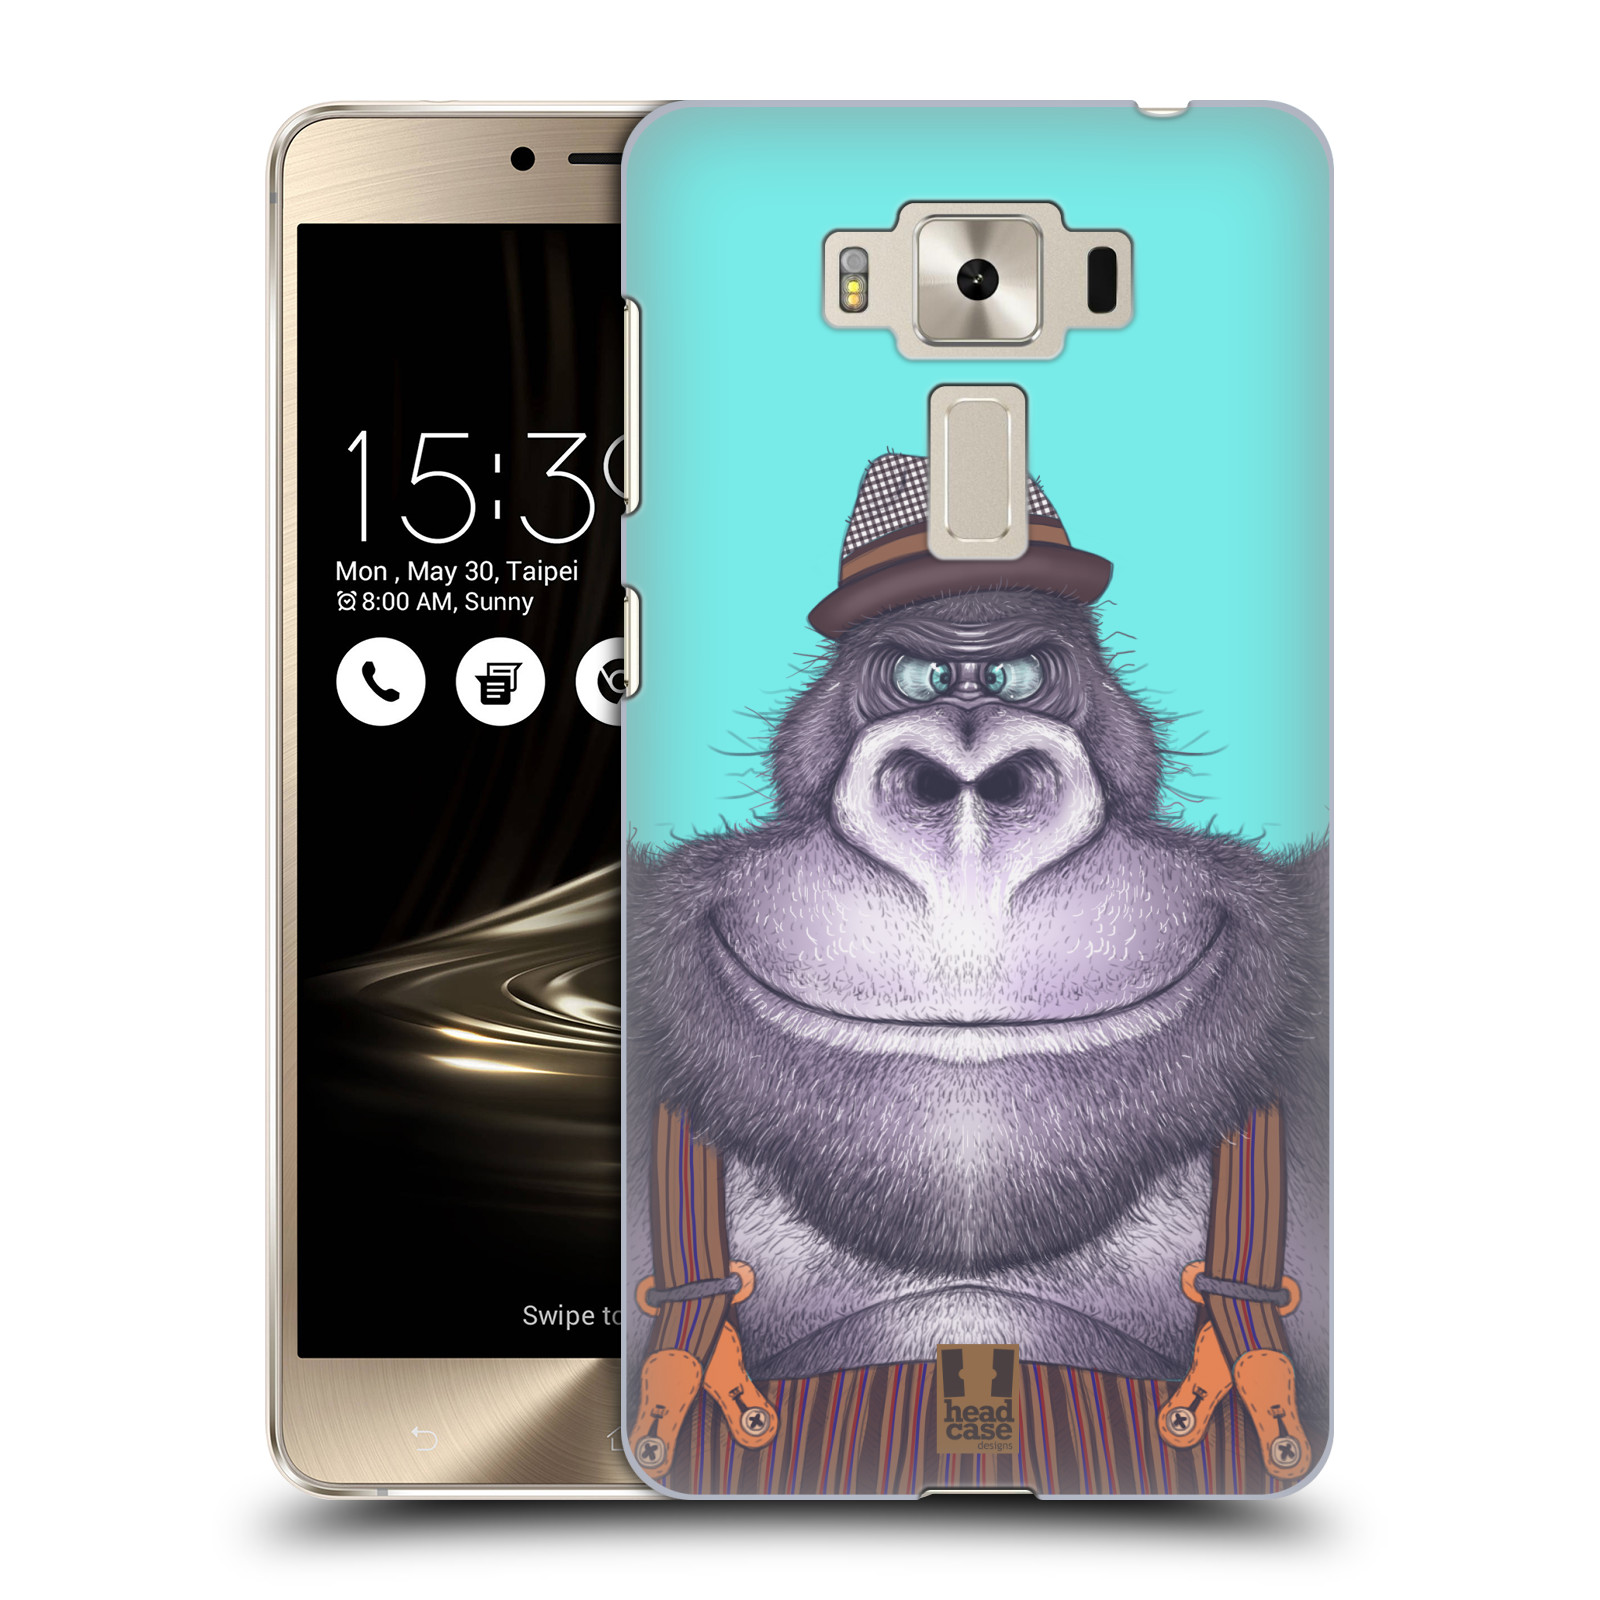 HEAD CASE plastový obal na mobil Asus Zenfone 3 DELUXE ZS550KL vzor Kreslená zvířátka gorila